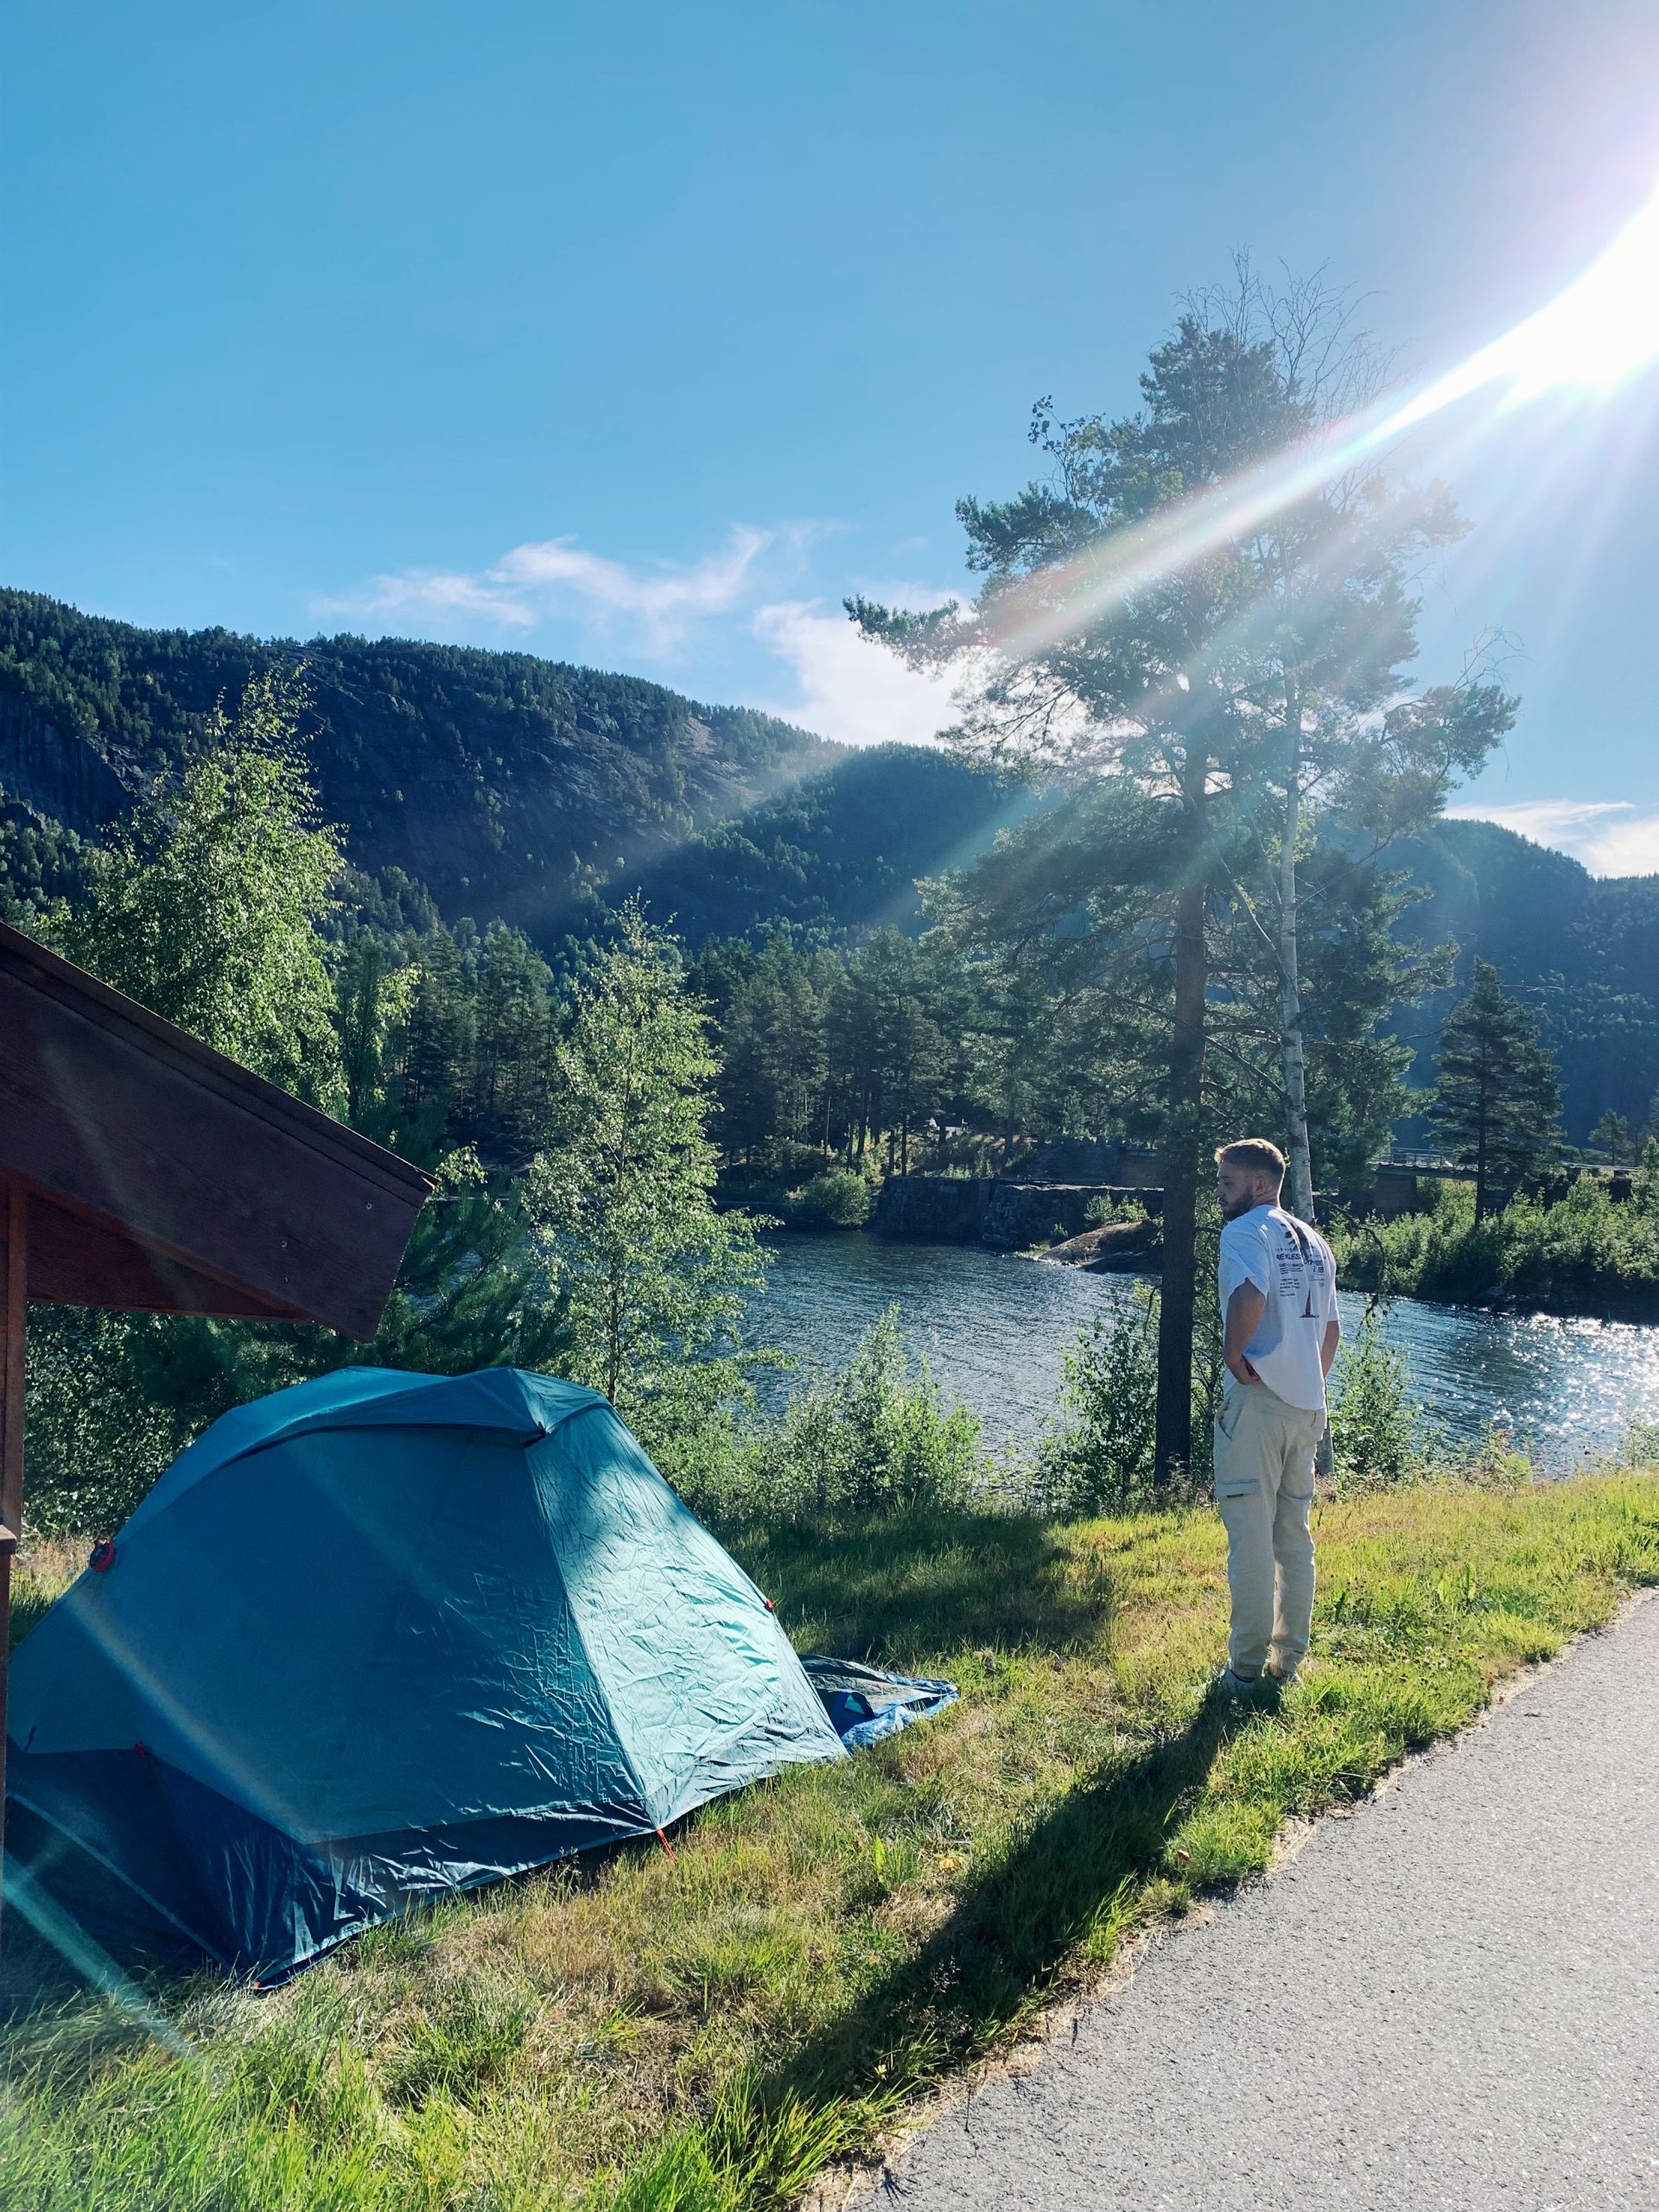 Mjesta za kampiranje uz cestu | Norveška